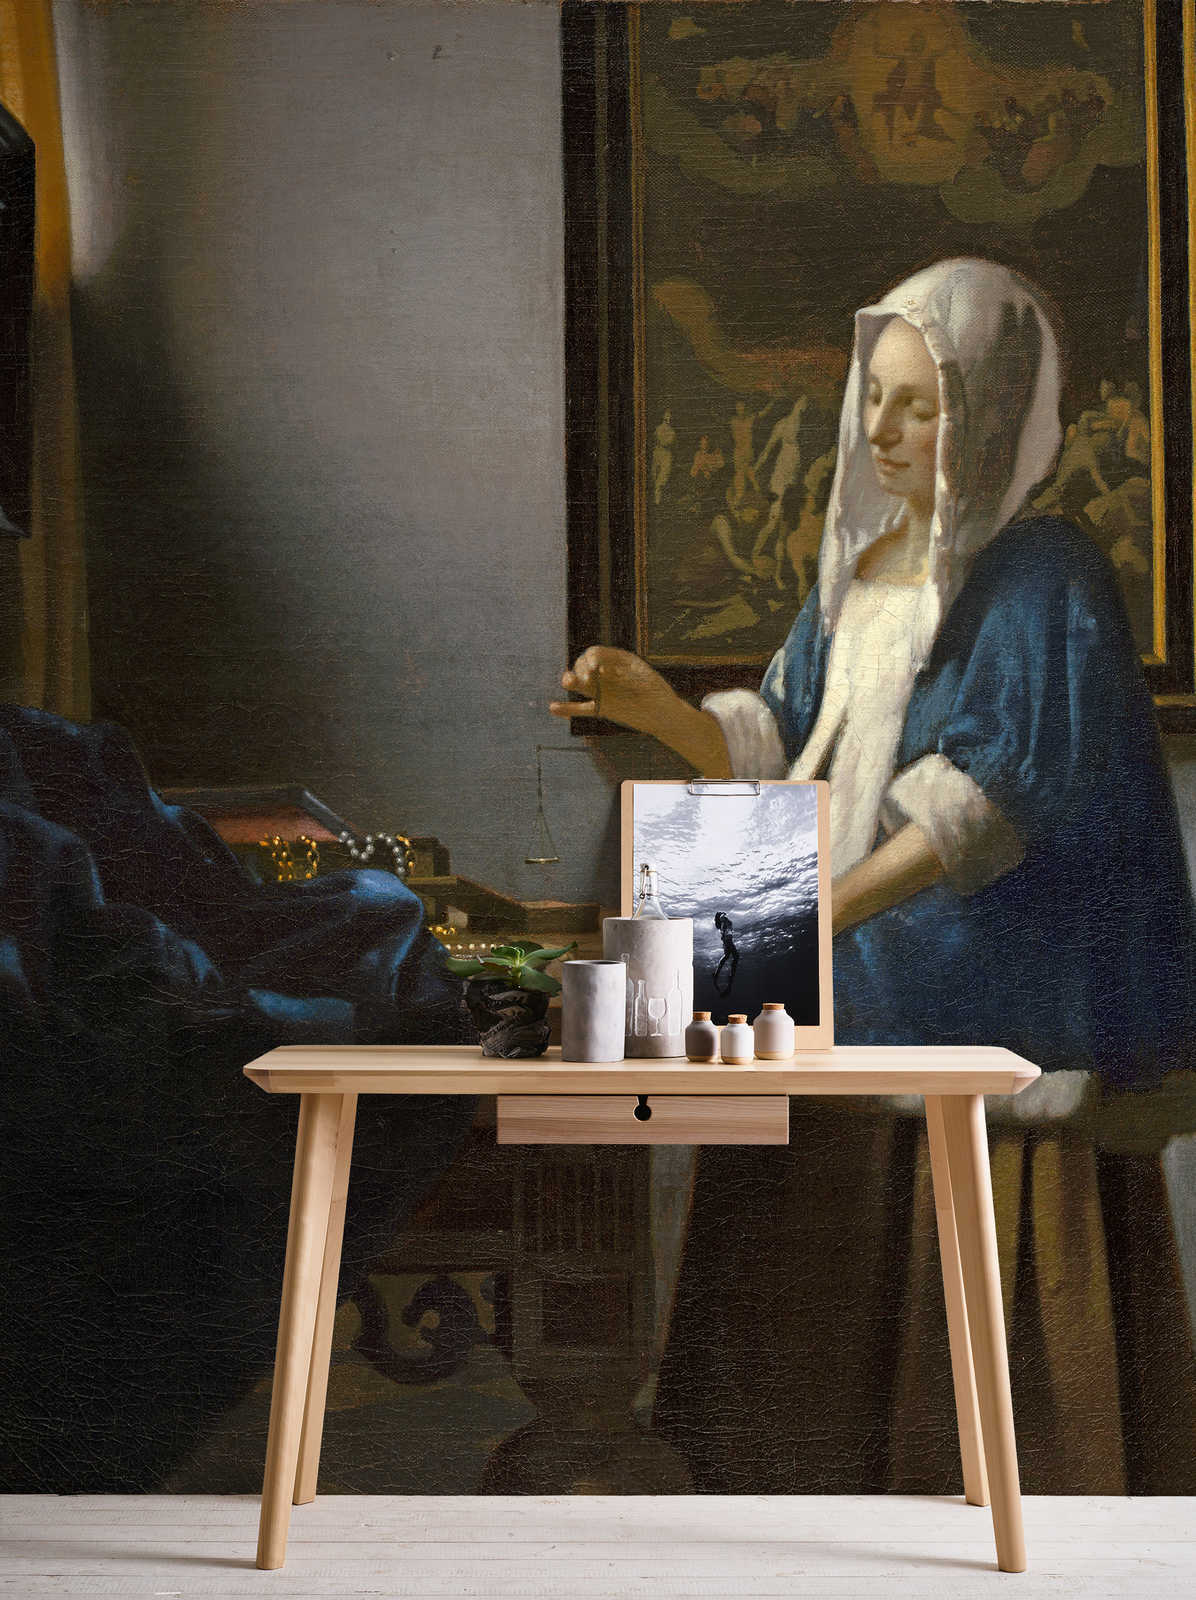             Mural "Mujer con escamas" de Jan Vermeer
        